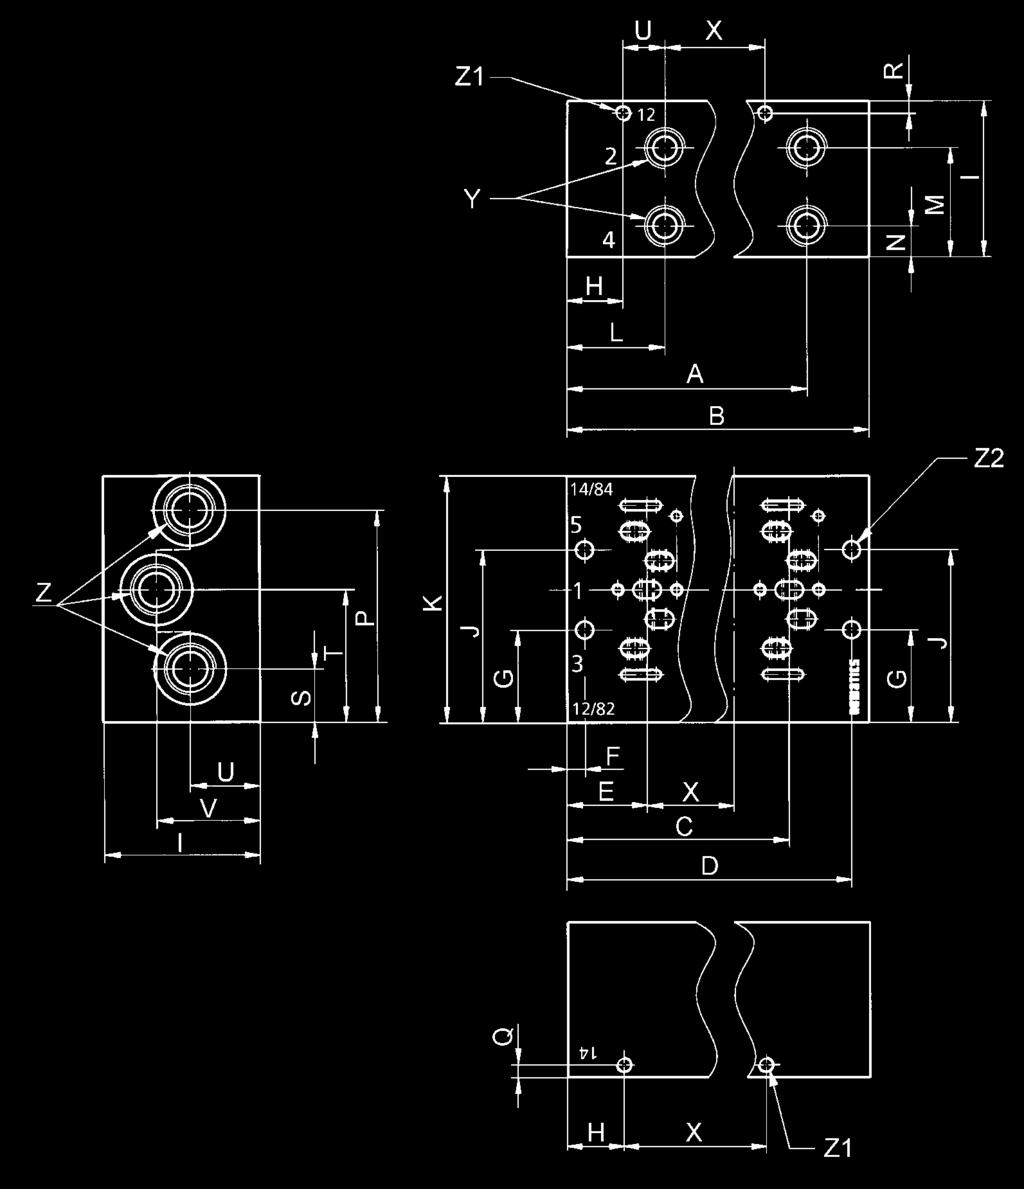 Basi Dimensioni Basi Manifold con ingressi laterali 2 e 4 in G 1/4 per distributore a comando pneumatico (connessioni 12/82 e 14/84 separate) 1x per stazione 2x